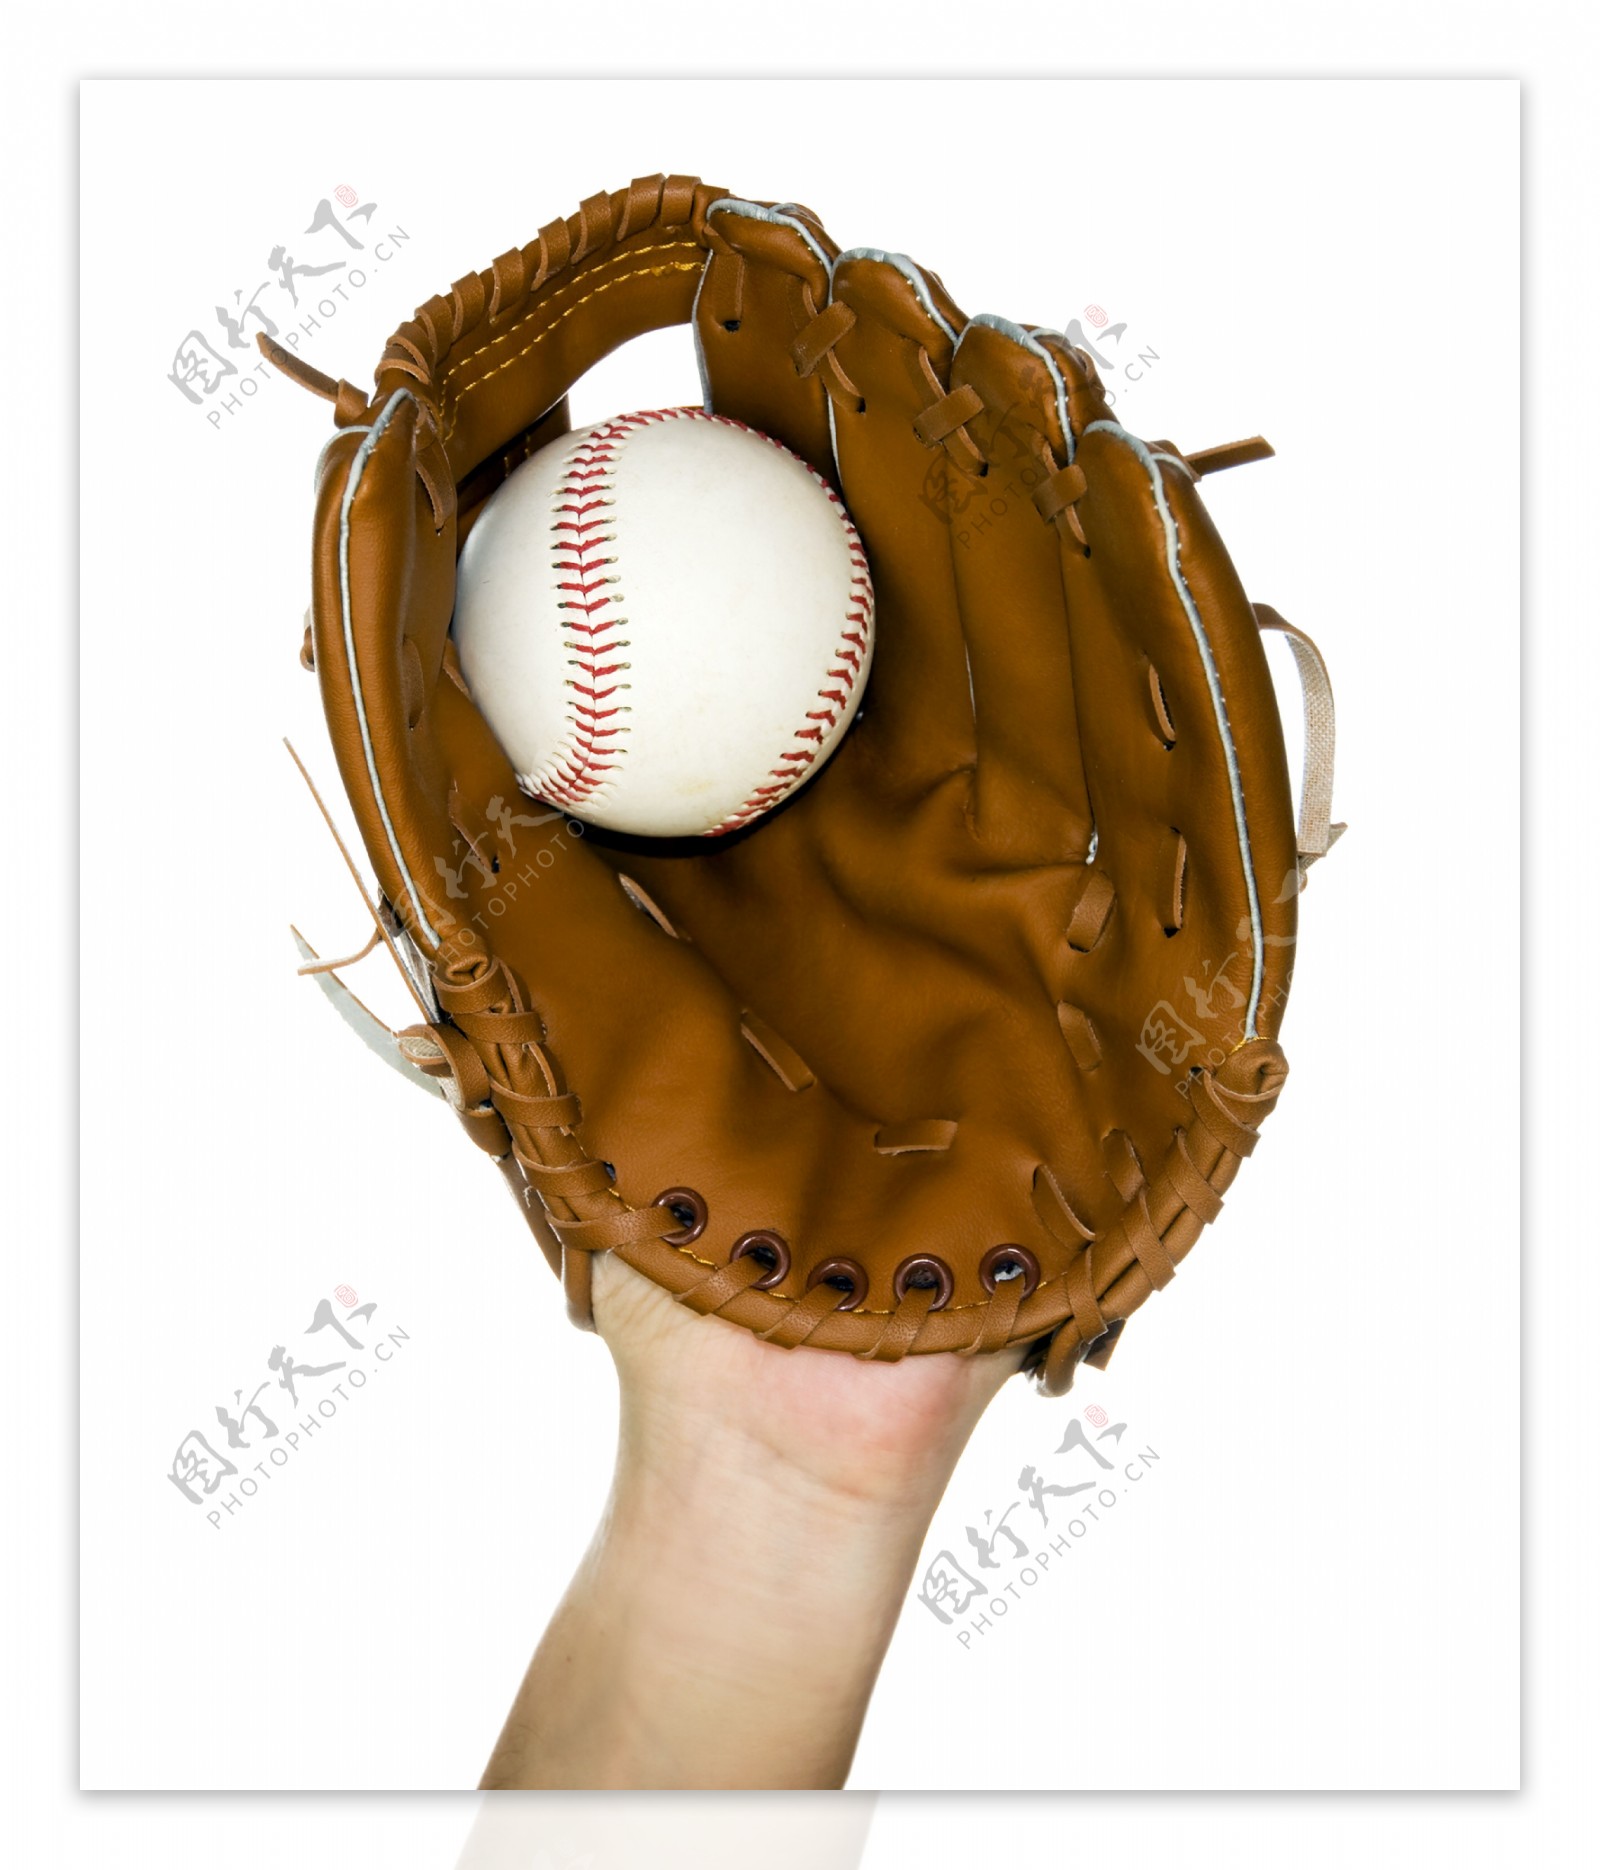 棒球手套